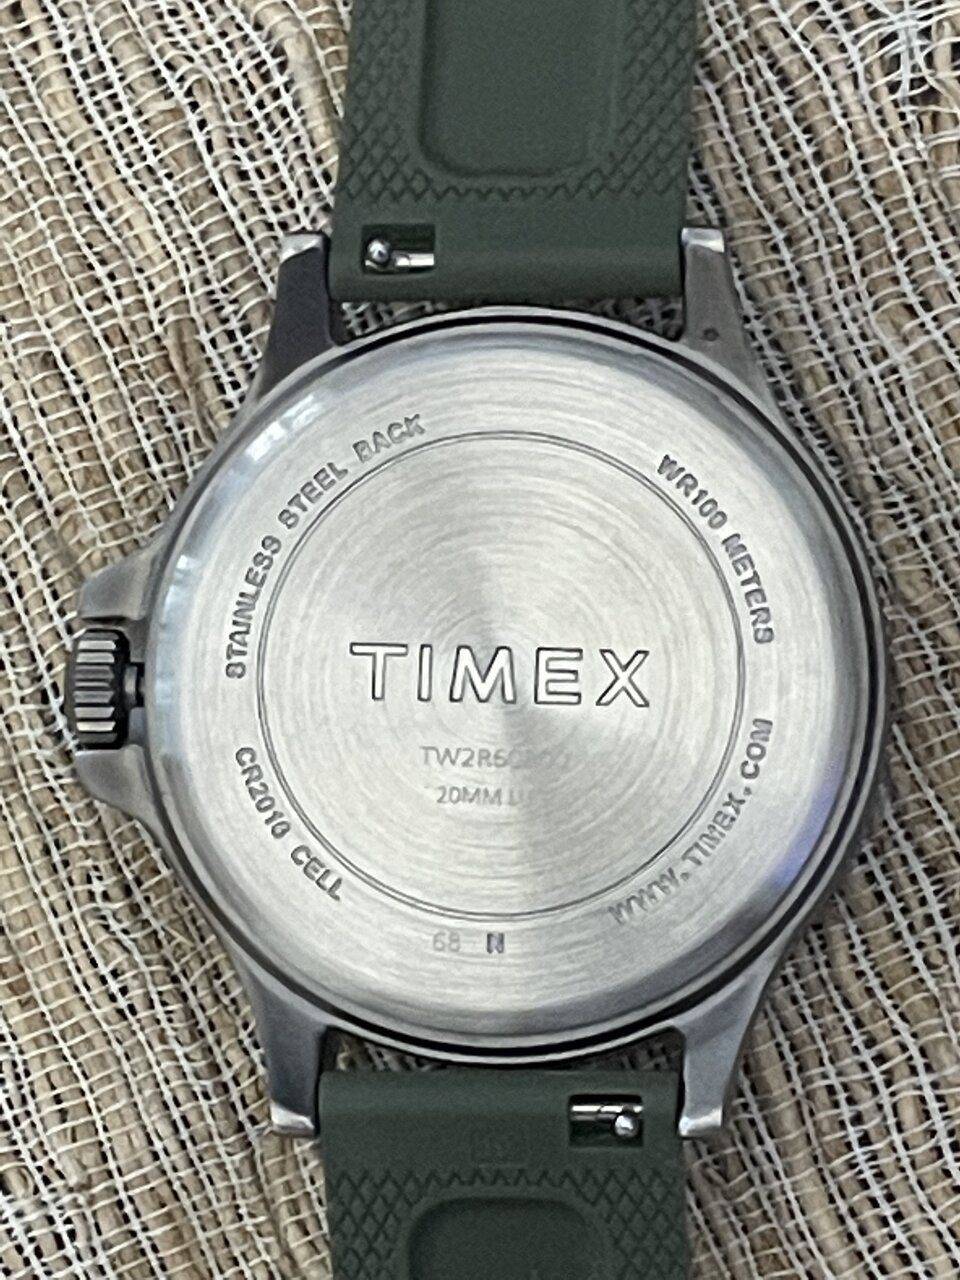 TIMEX 4.jpeg